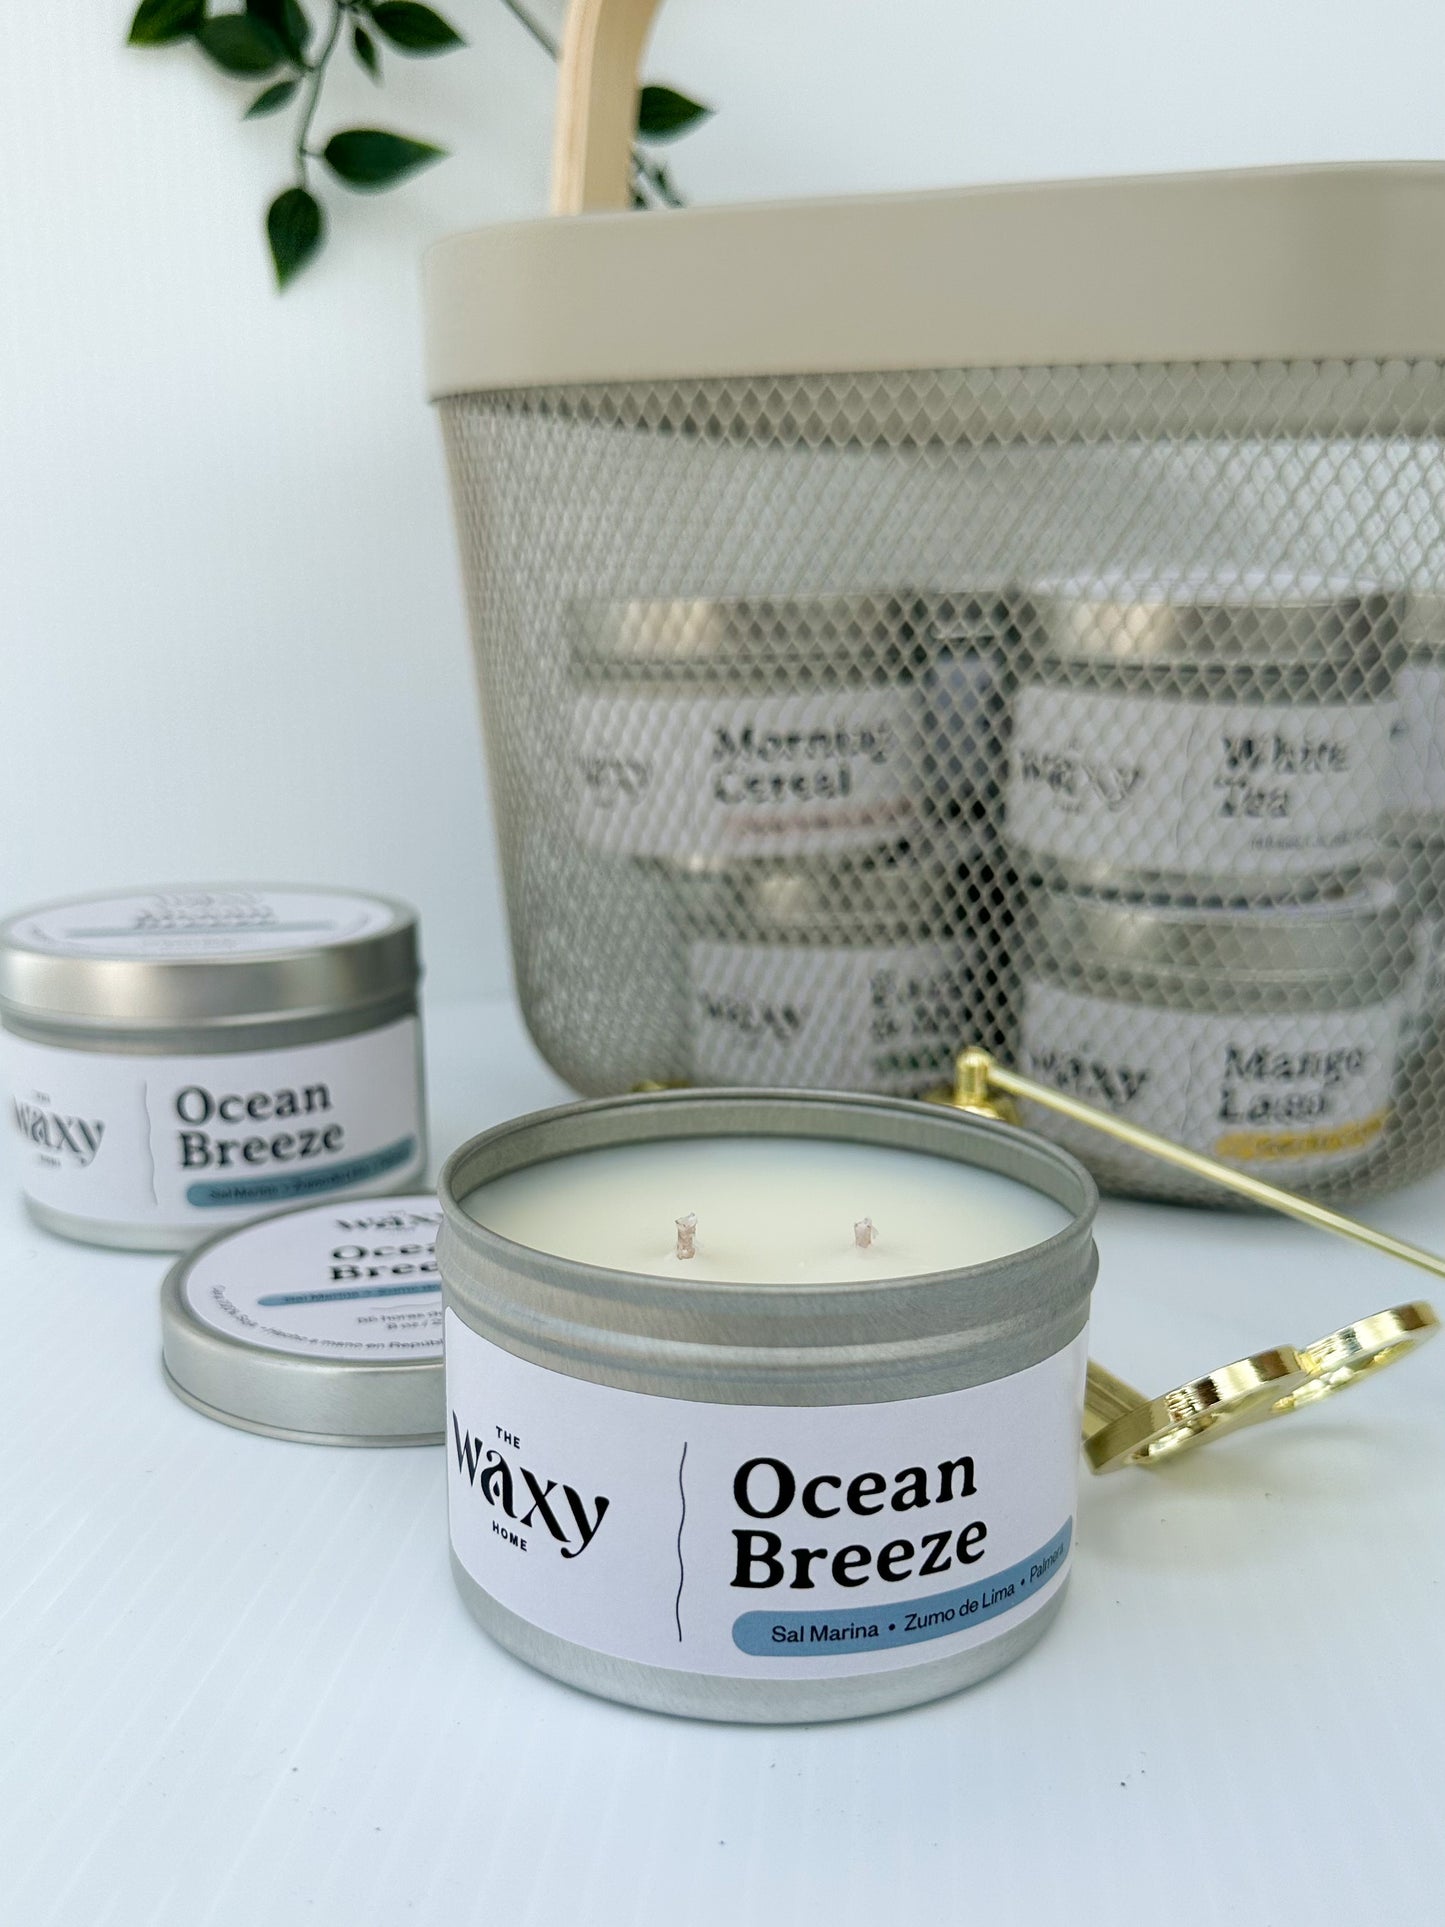 Ocean Breeze vela en lata aromatizada con los aromas del mar como Sal marina, Ralladura de Lima y Palma